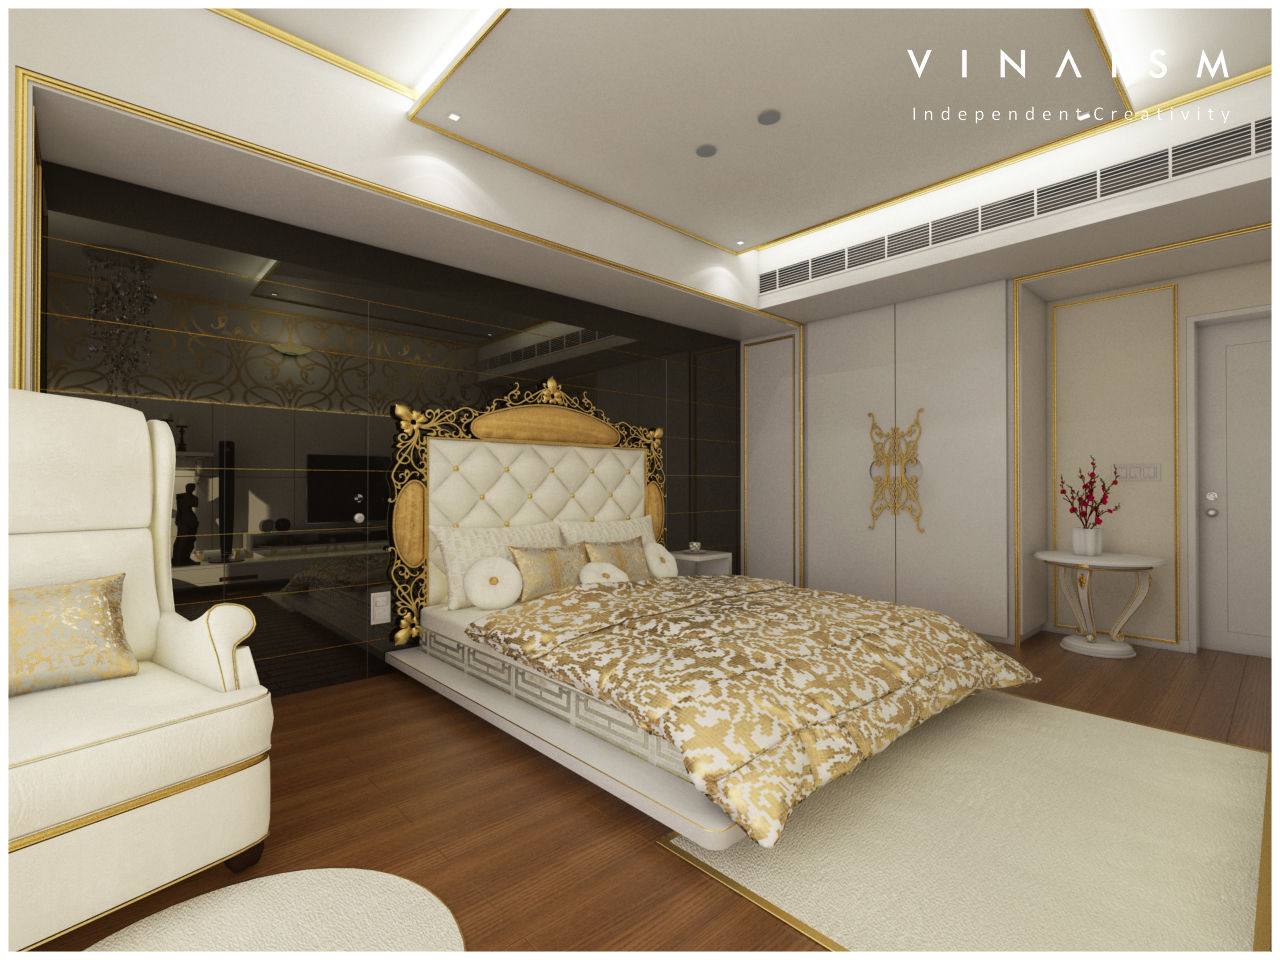 white n golden, V I N A I S M V I N A I S M Dormitorios: Ideas, imágenes y decoración